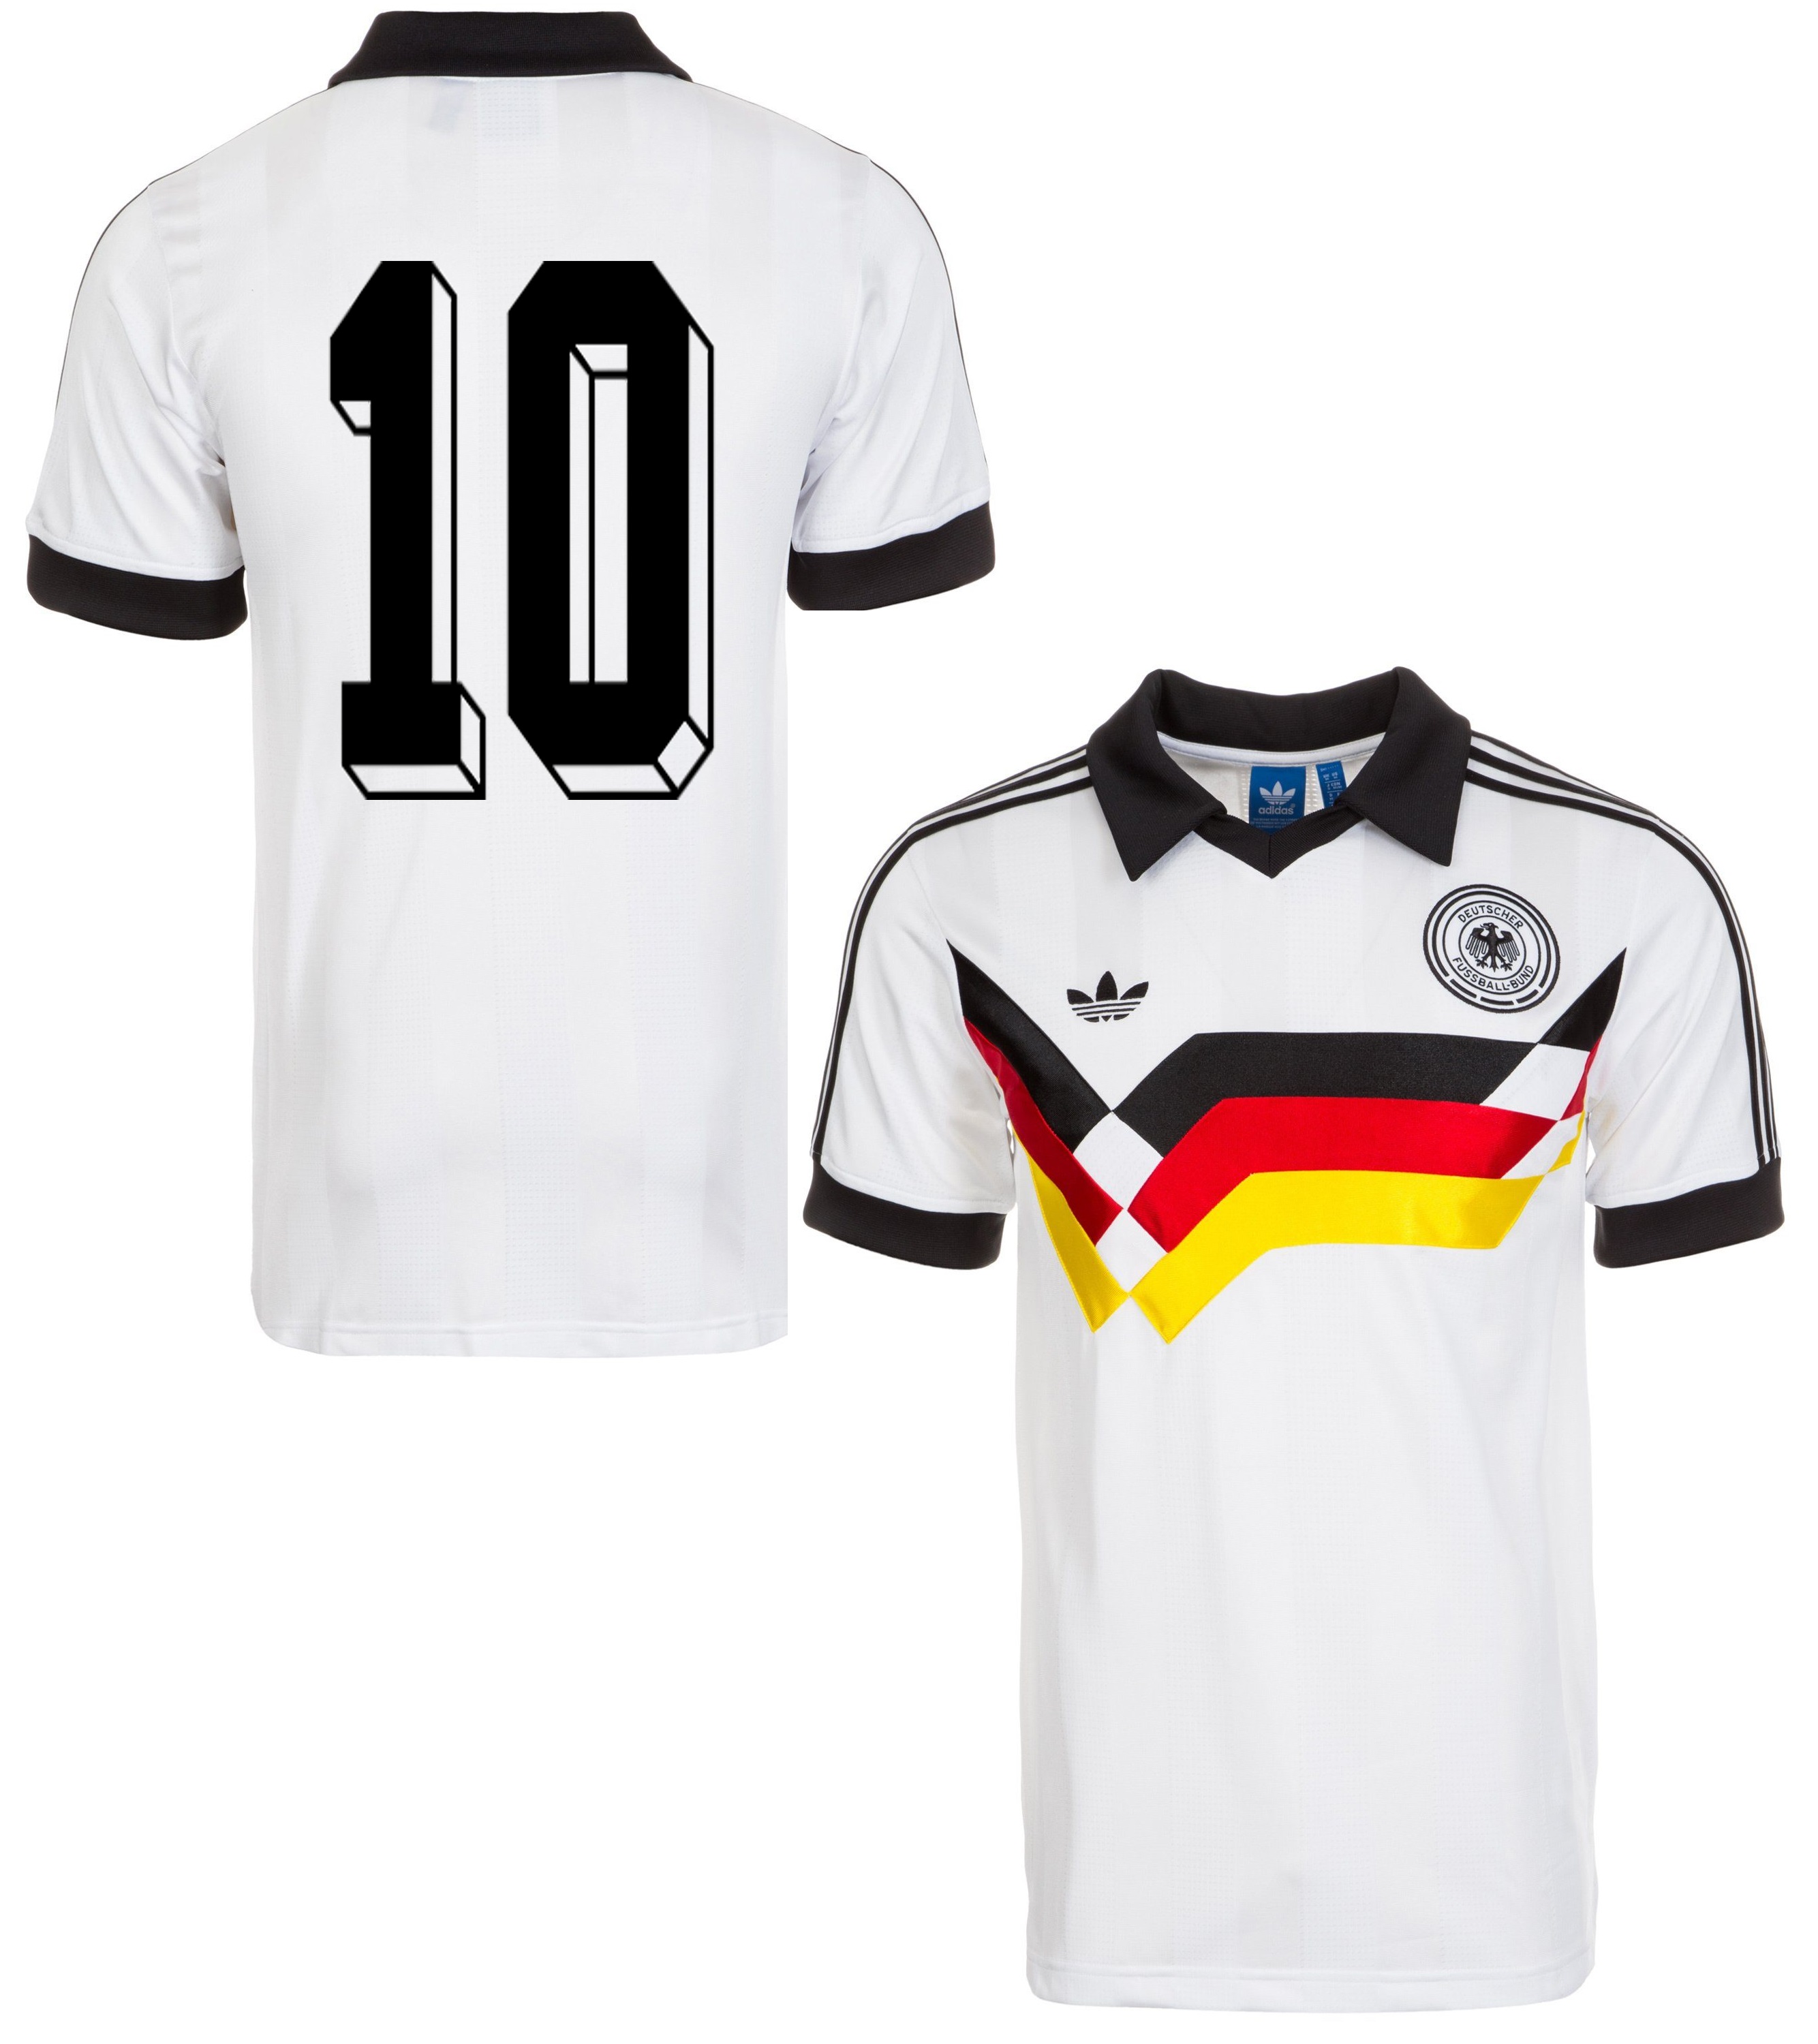 Adidas originals Germany jersey 10 Lothar Matthäus DfB T